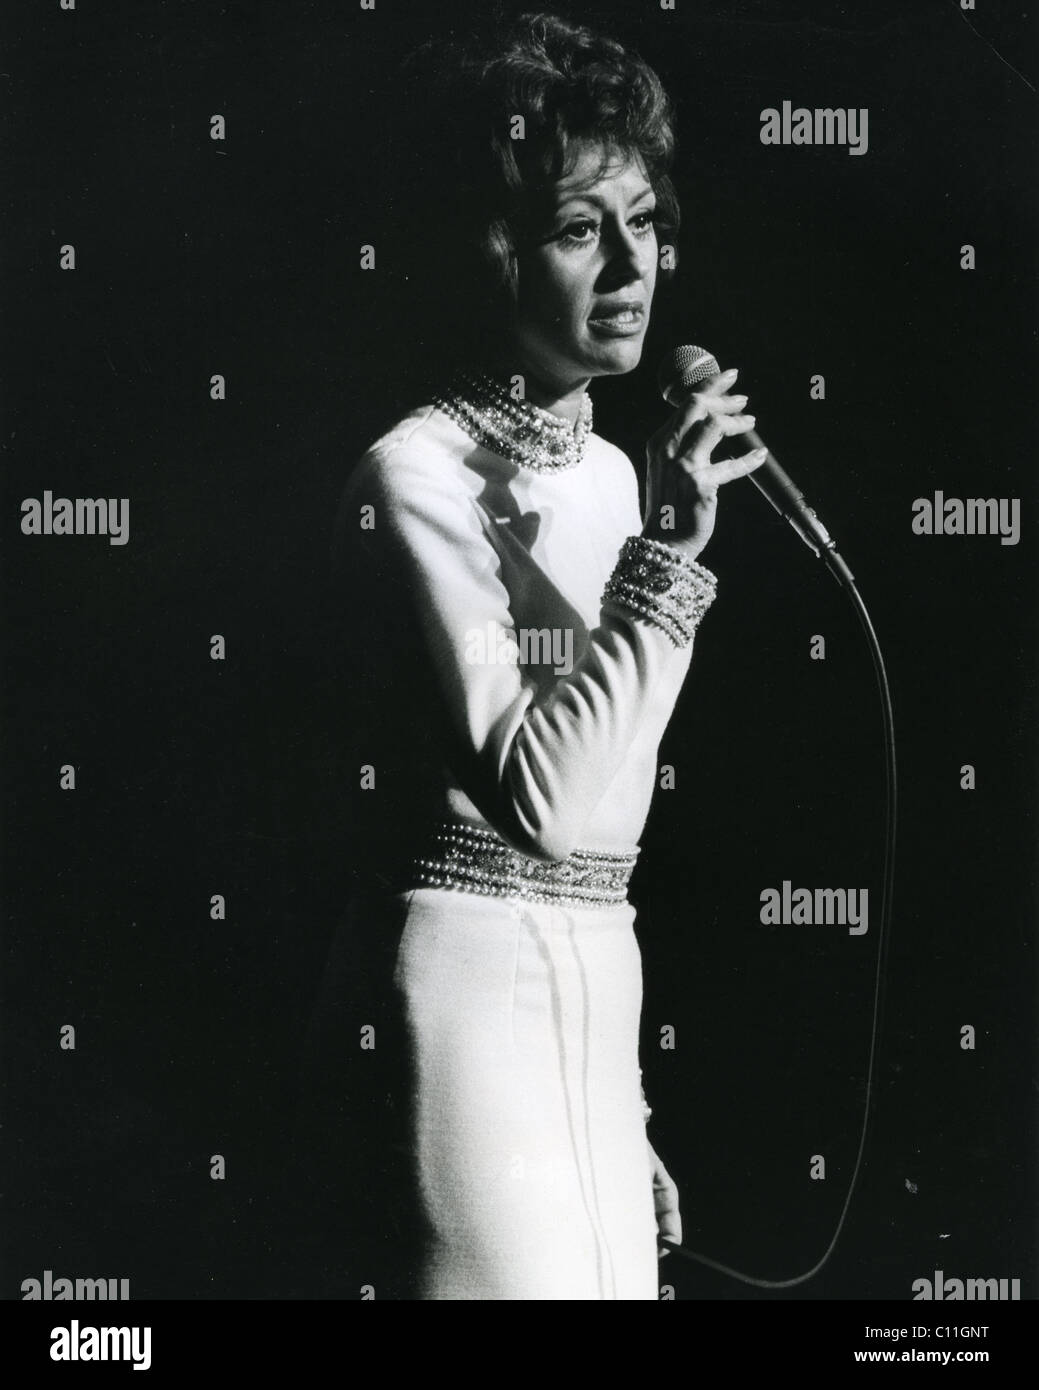 CATARINA VALENTE Französisch-italienische Sängerin im Jahr 1970. Foto Tony Gale Stockfoto